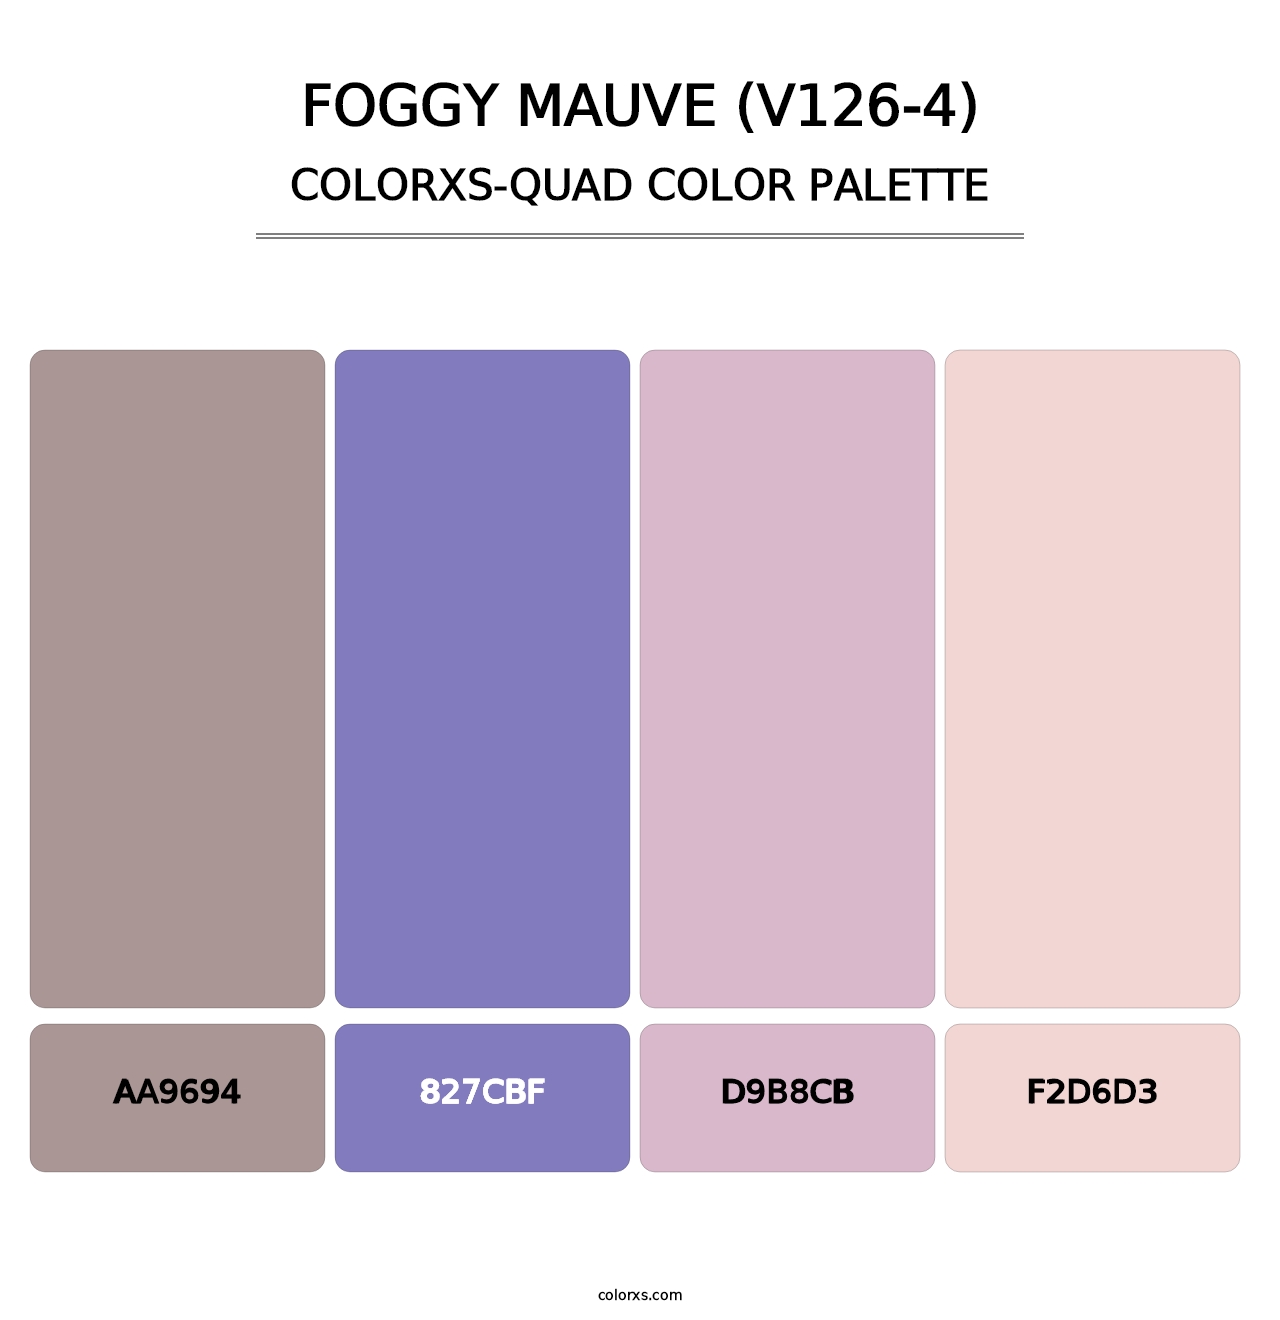 Foggy Mauve (V126-4) - Colorxs Quad Palette